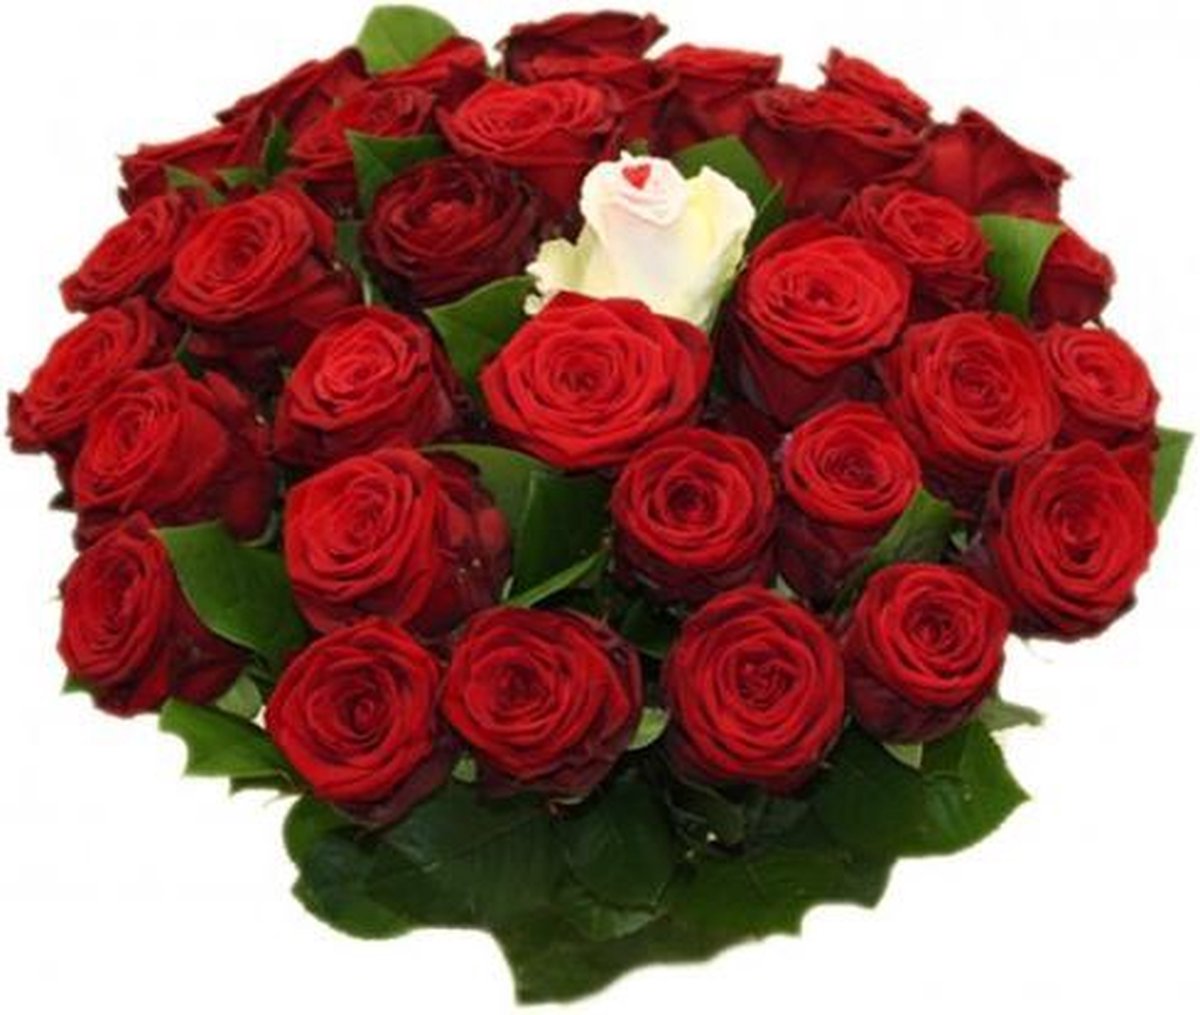 Baron Tomaat middelen Boeket met 25 rode rozen boeket + 1 witte sugar roos in midden | bol.com